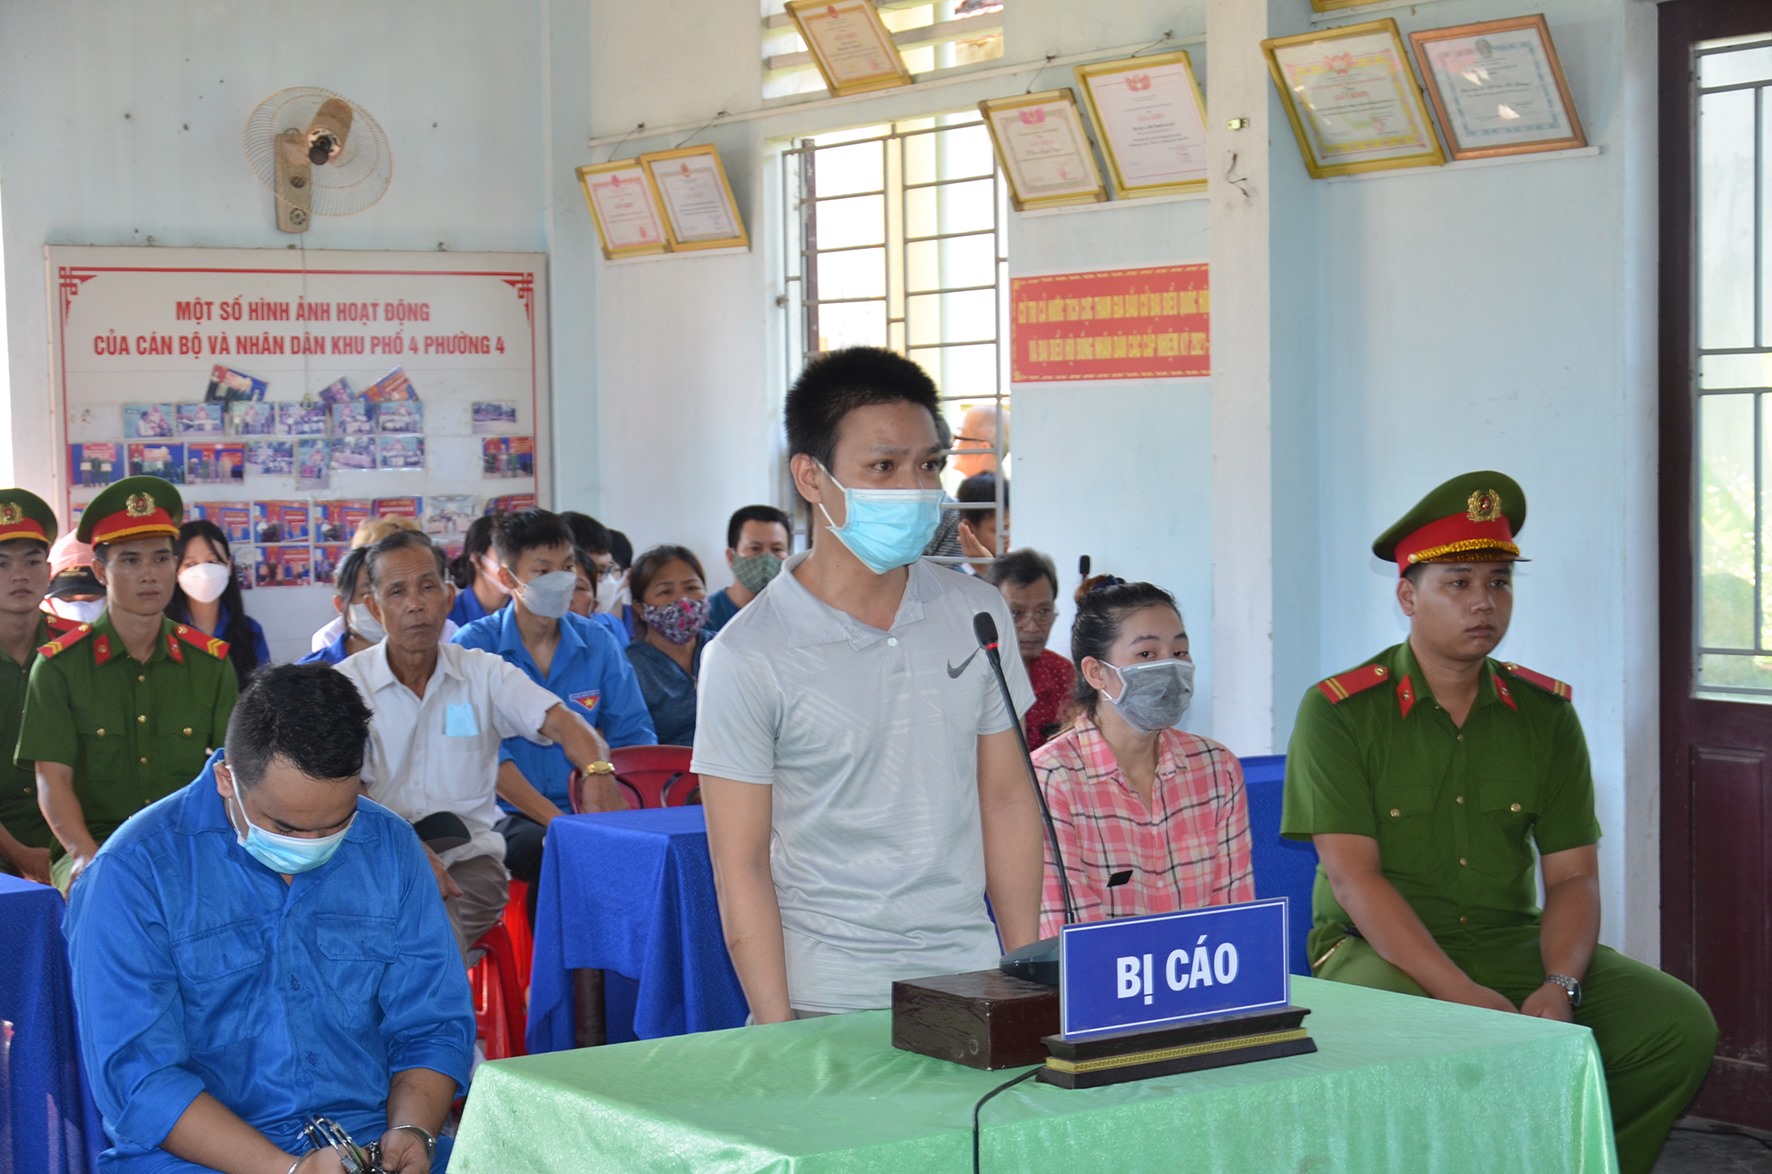 Các bị cáo Nguyễn Phi Long, Lê Viết Ngọ, Nguyễn Thị Thùy Linh tại phiên xét xử sáng ngày 28/6 - Ảnh: Lê Minh